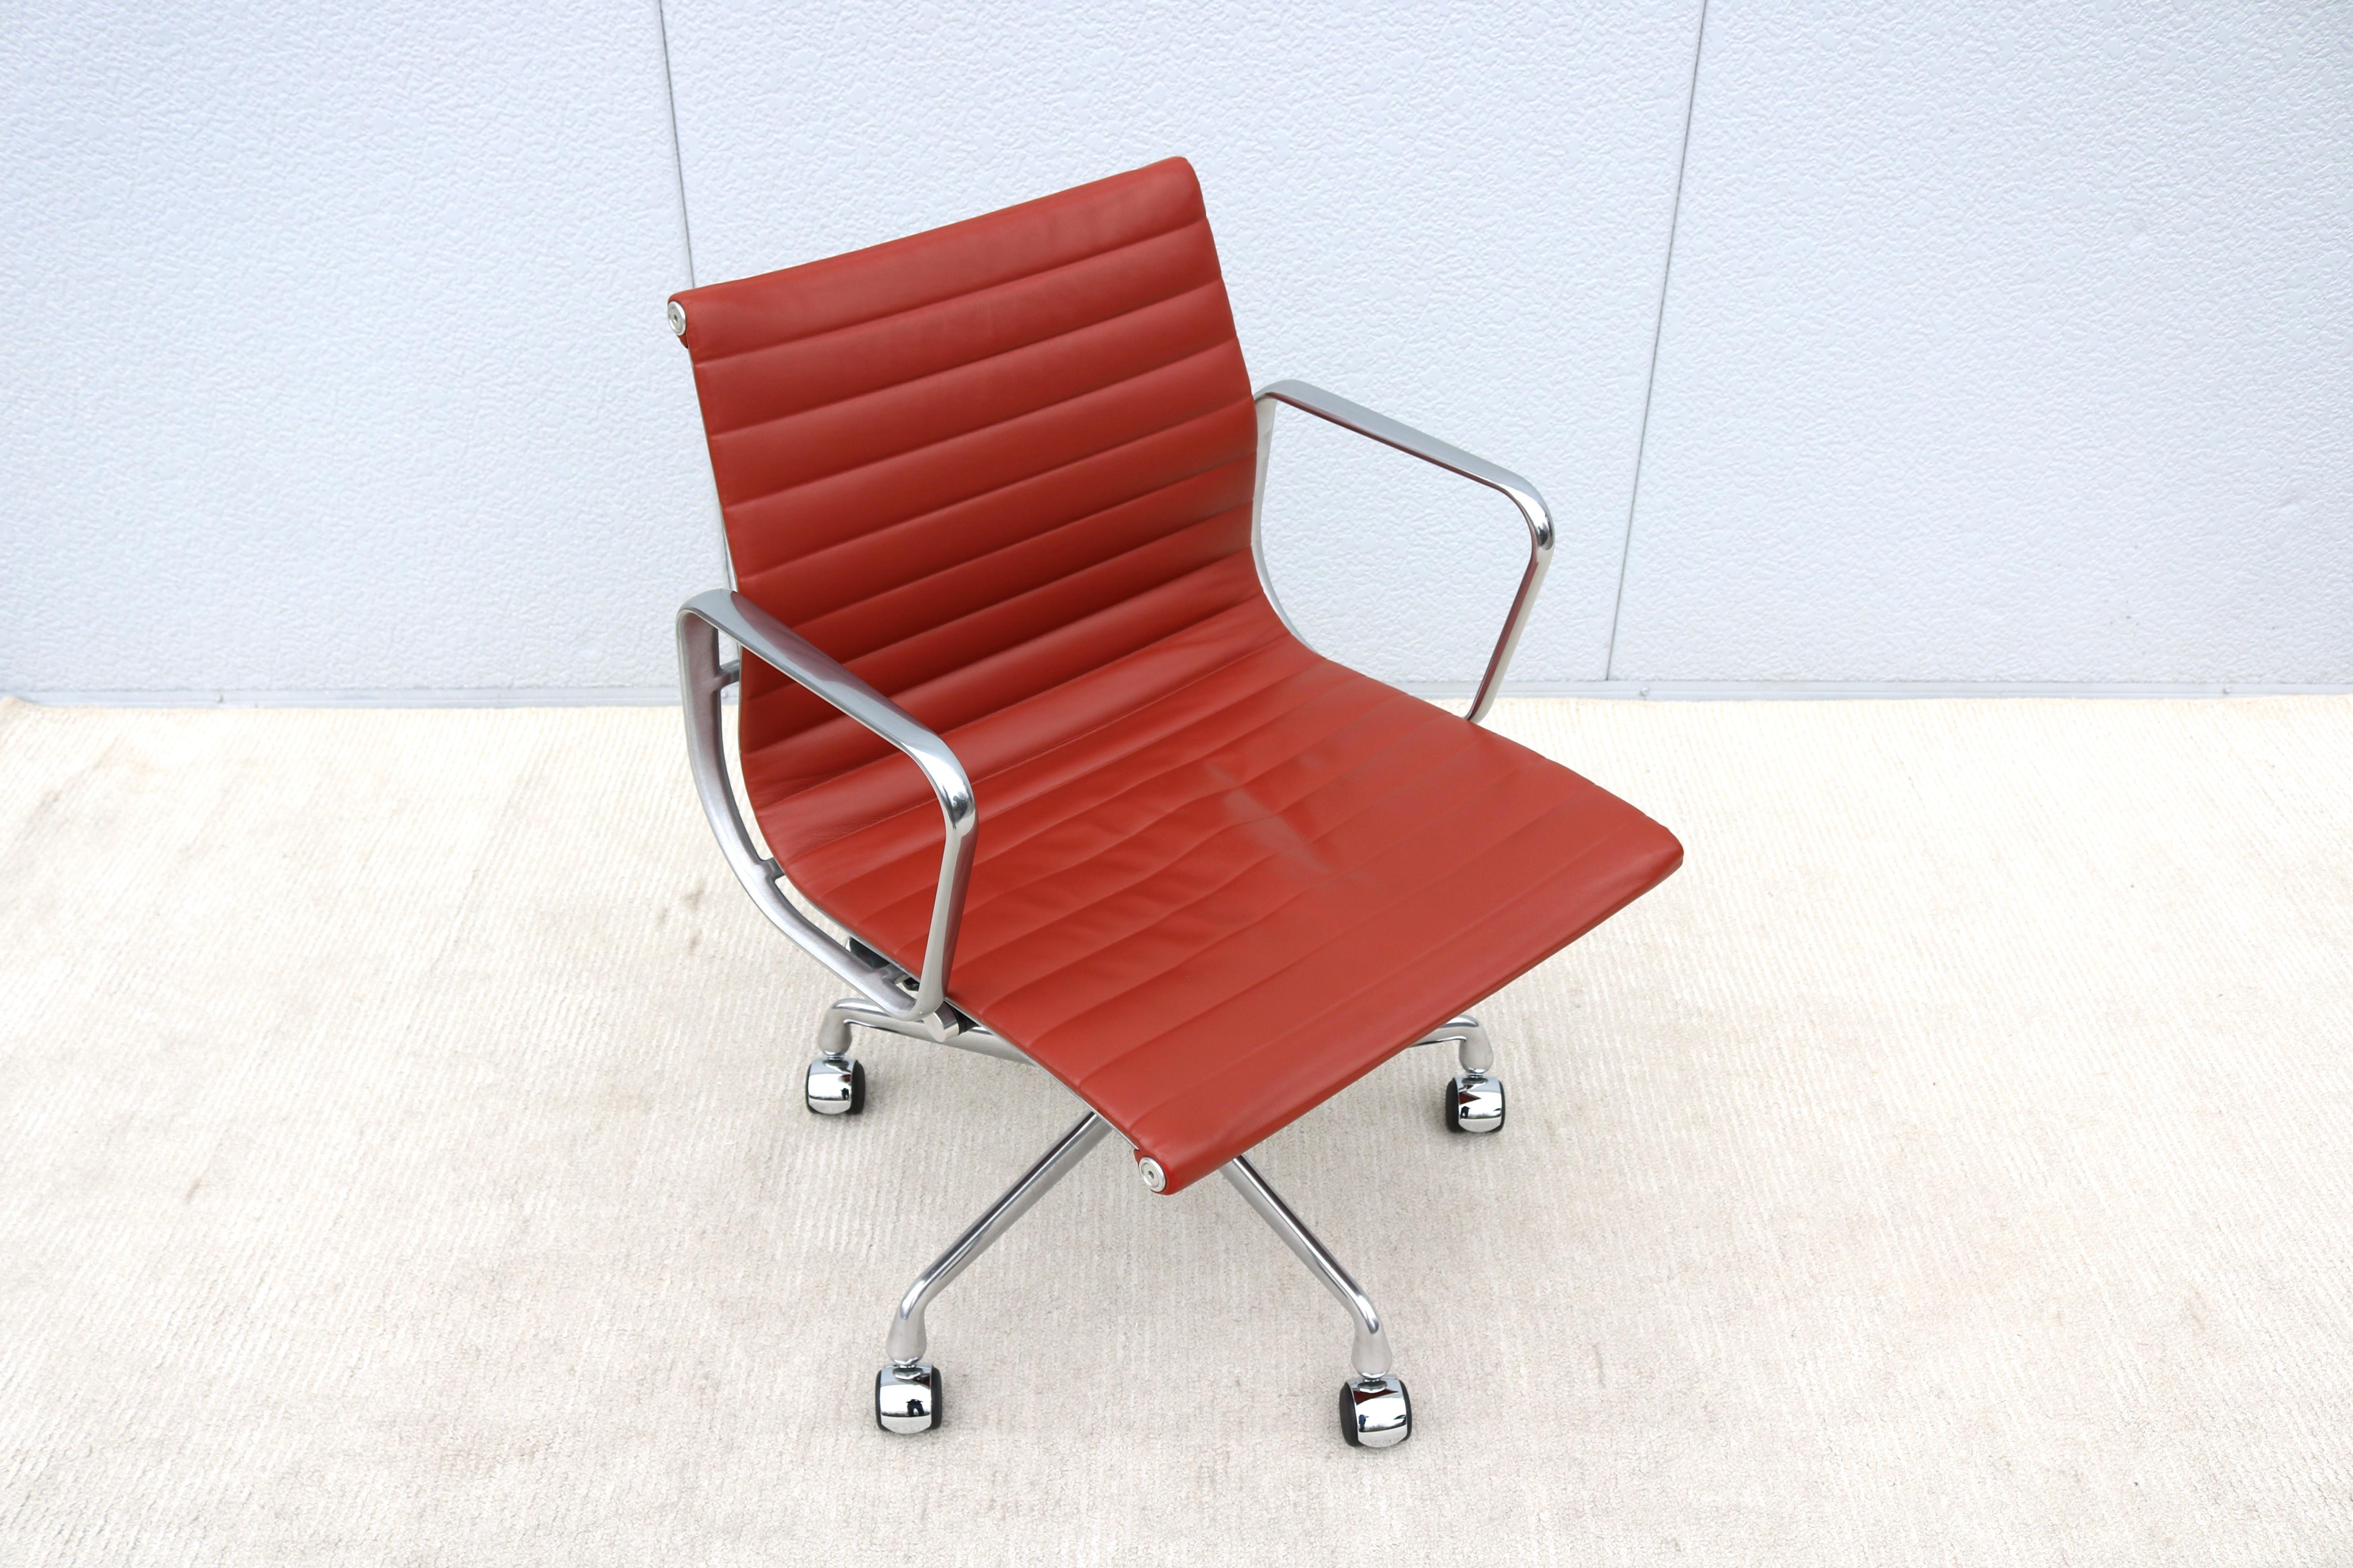 Superbe chaise de gestion de groupe Eames en aluminium, authentiquement moderne, datant du milieu du siècle.
Un design intemporel classique et contemporain avec des caractéristiques de confort innovantes.
L'une des chaises les plus populaires